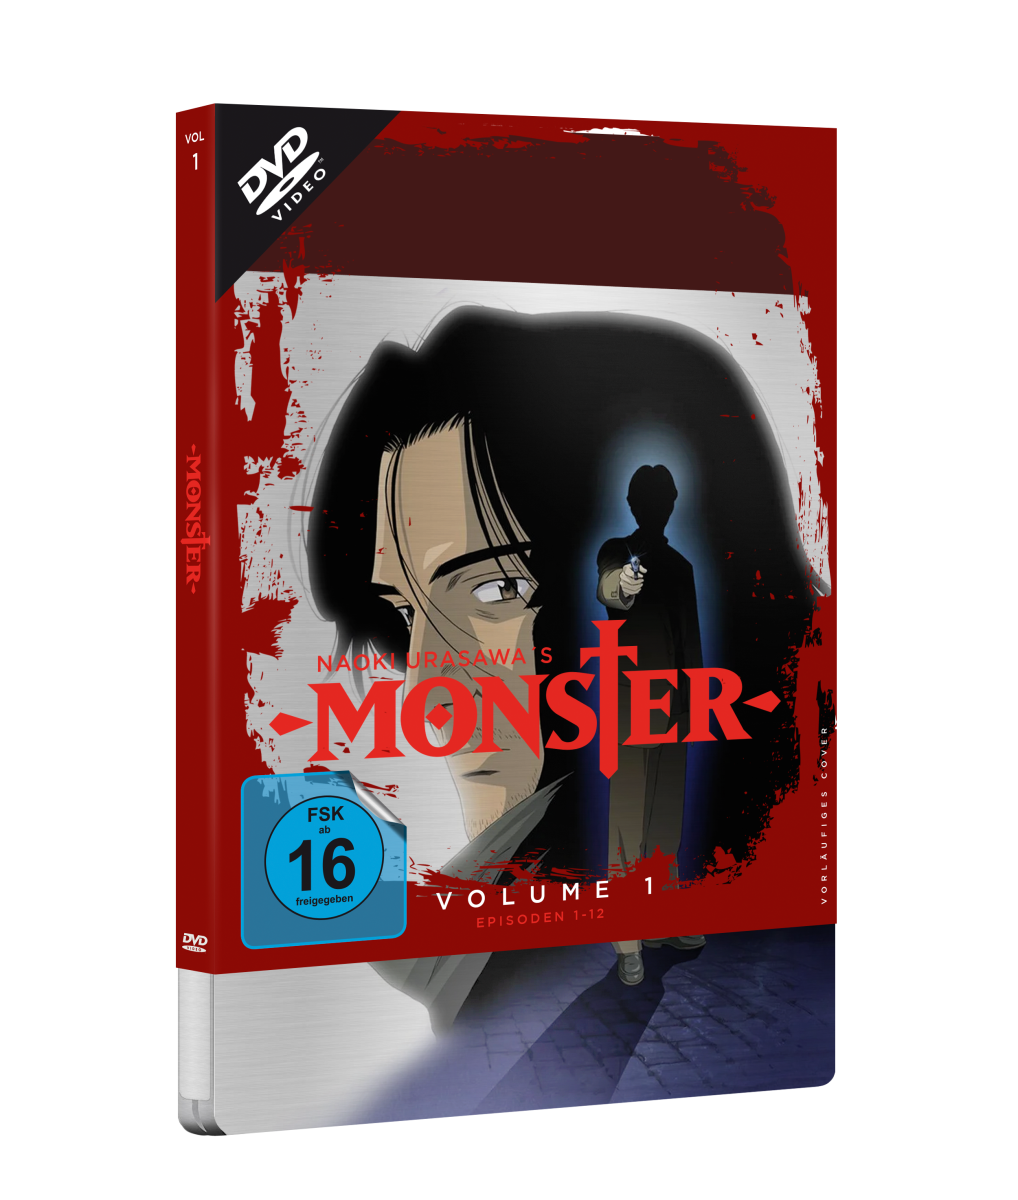 MONSTER - Volume 1: Episode 1-12 im limitierten Steelbook [DVD] Image 3